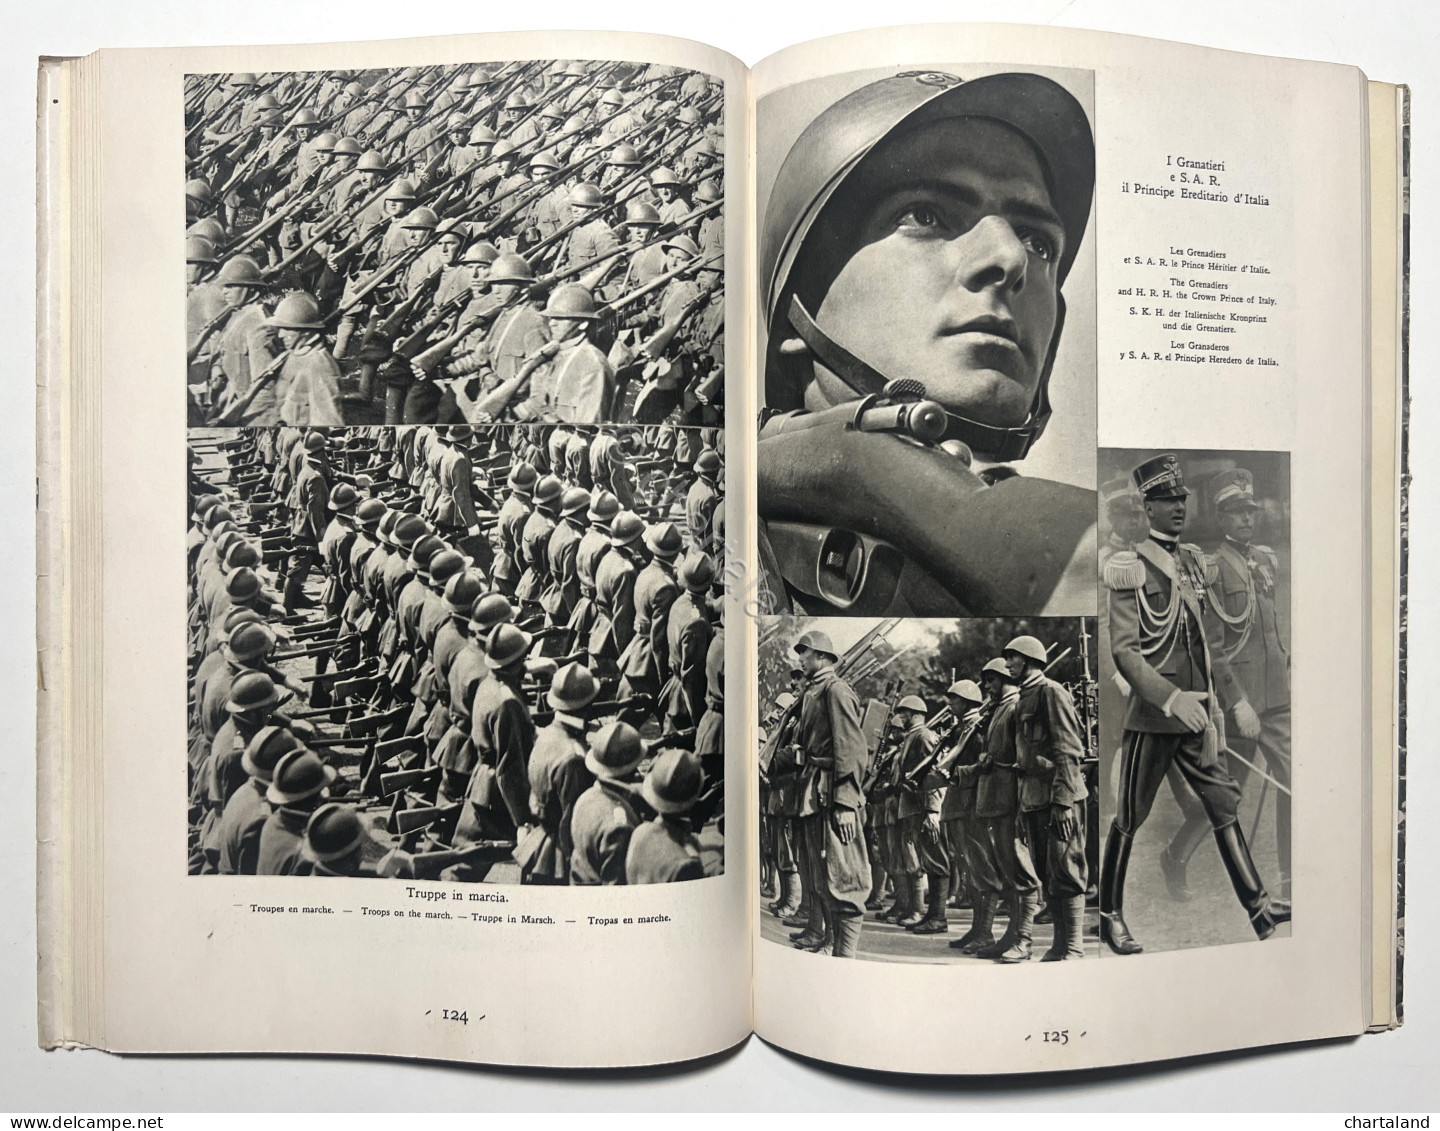 Istituto Nazionale L.U.C.E. - L'Italia Fascista In Cammino - Ed. 1932 - Autres & Non Classés